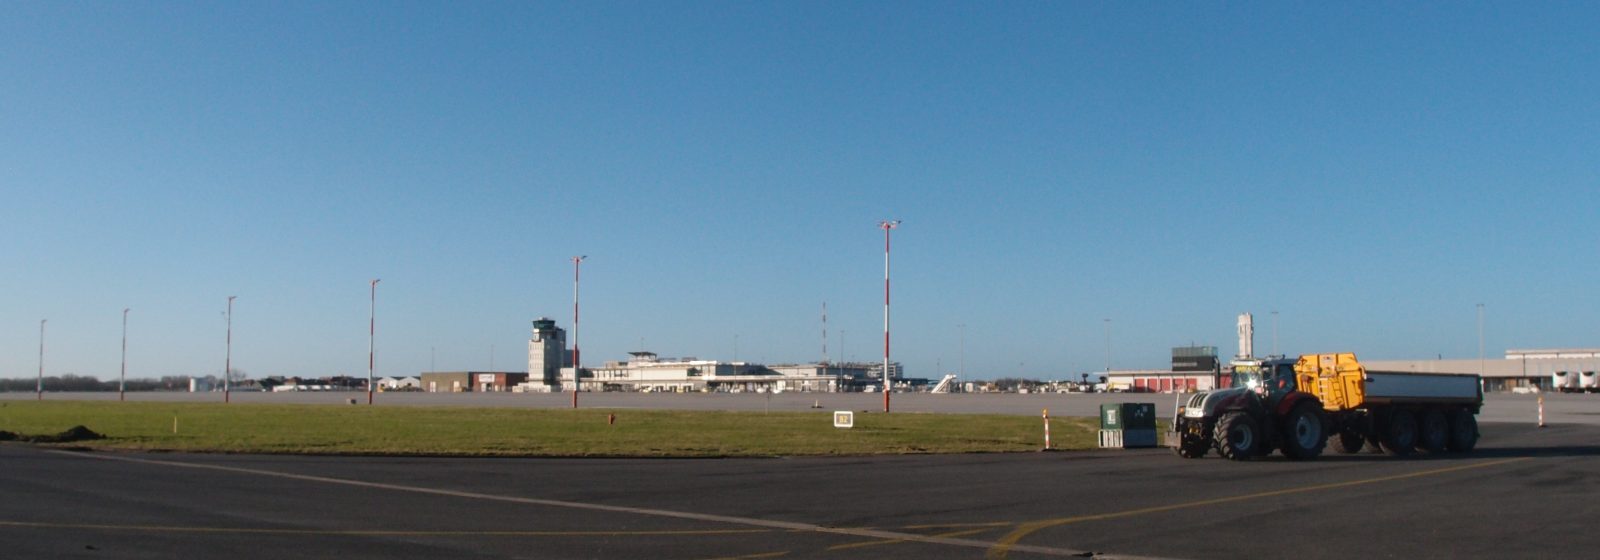 Luchthaven Oostende-Brugge leeg voor renovatie startbaan